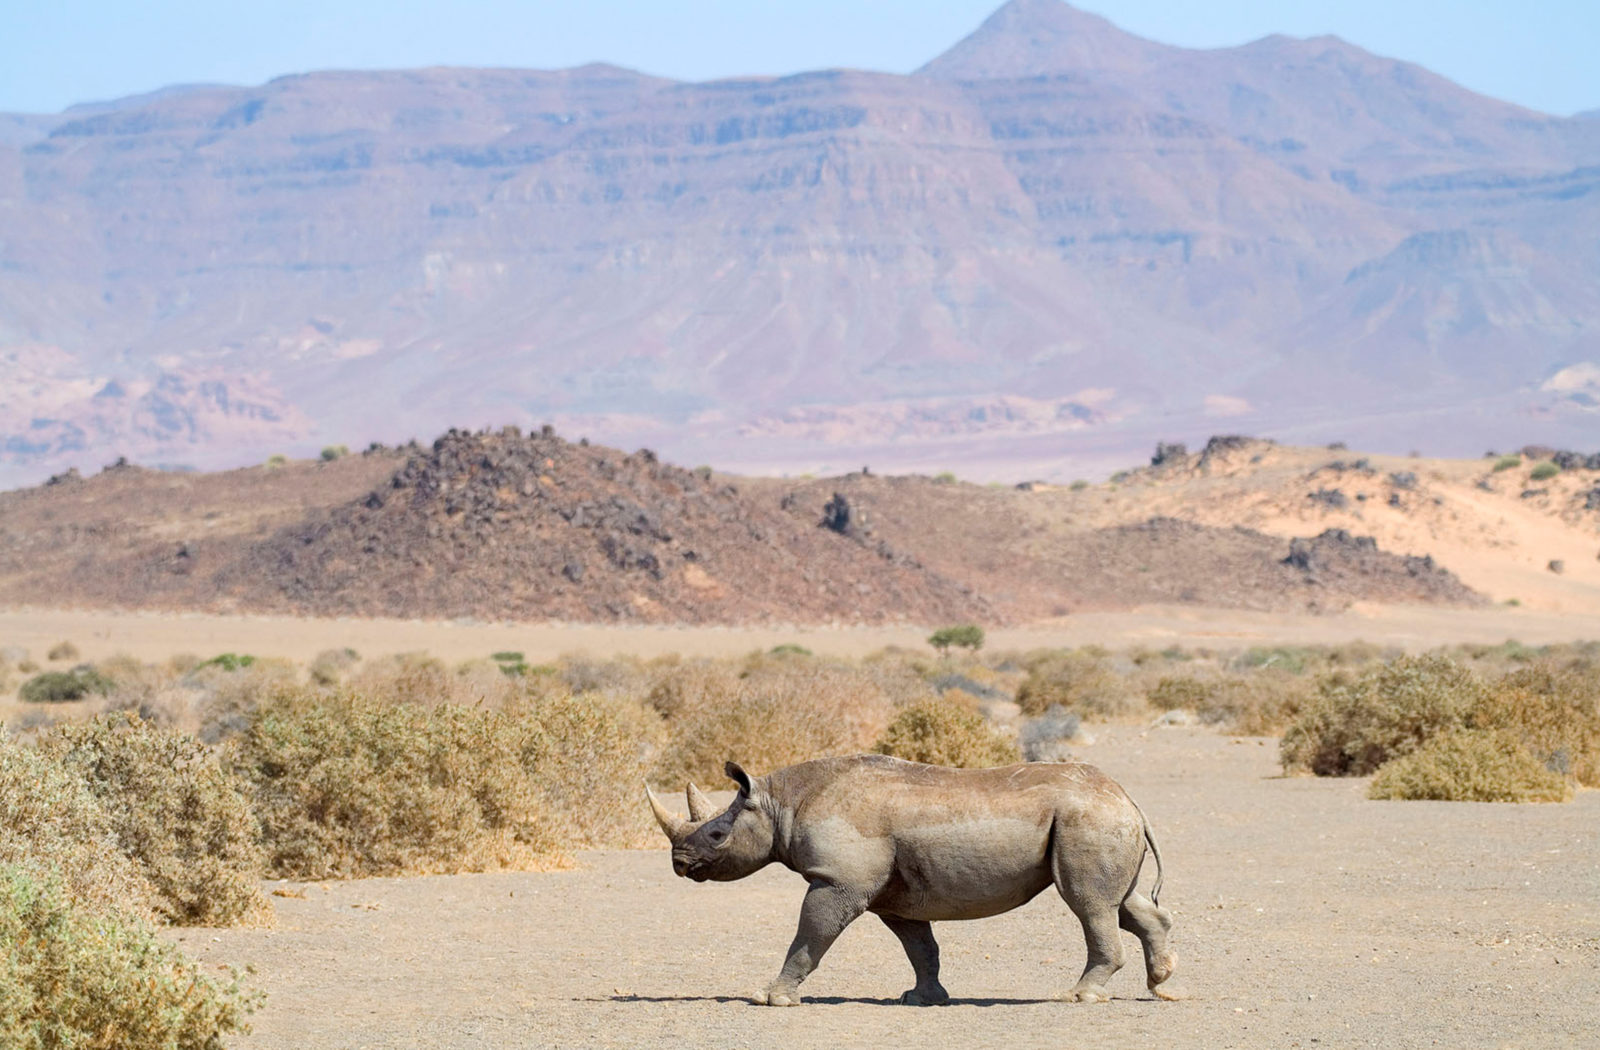 Desert-adapted Rhino